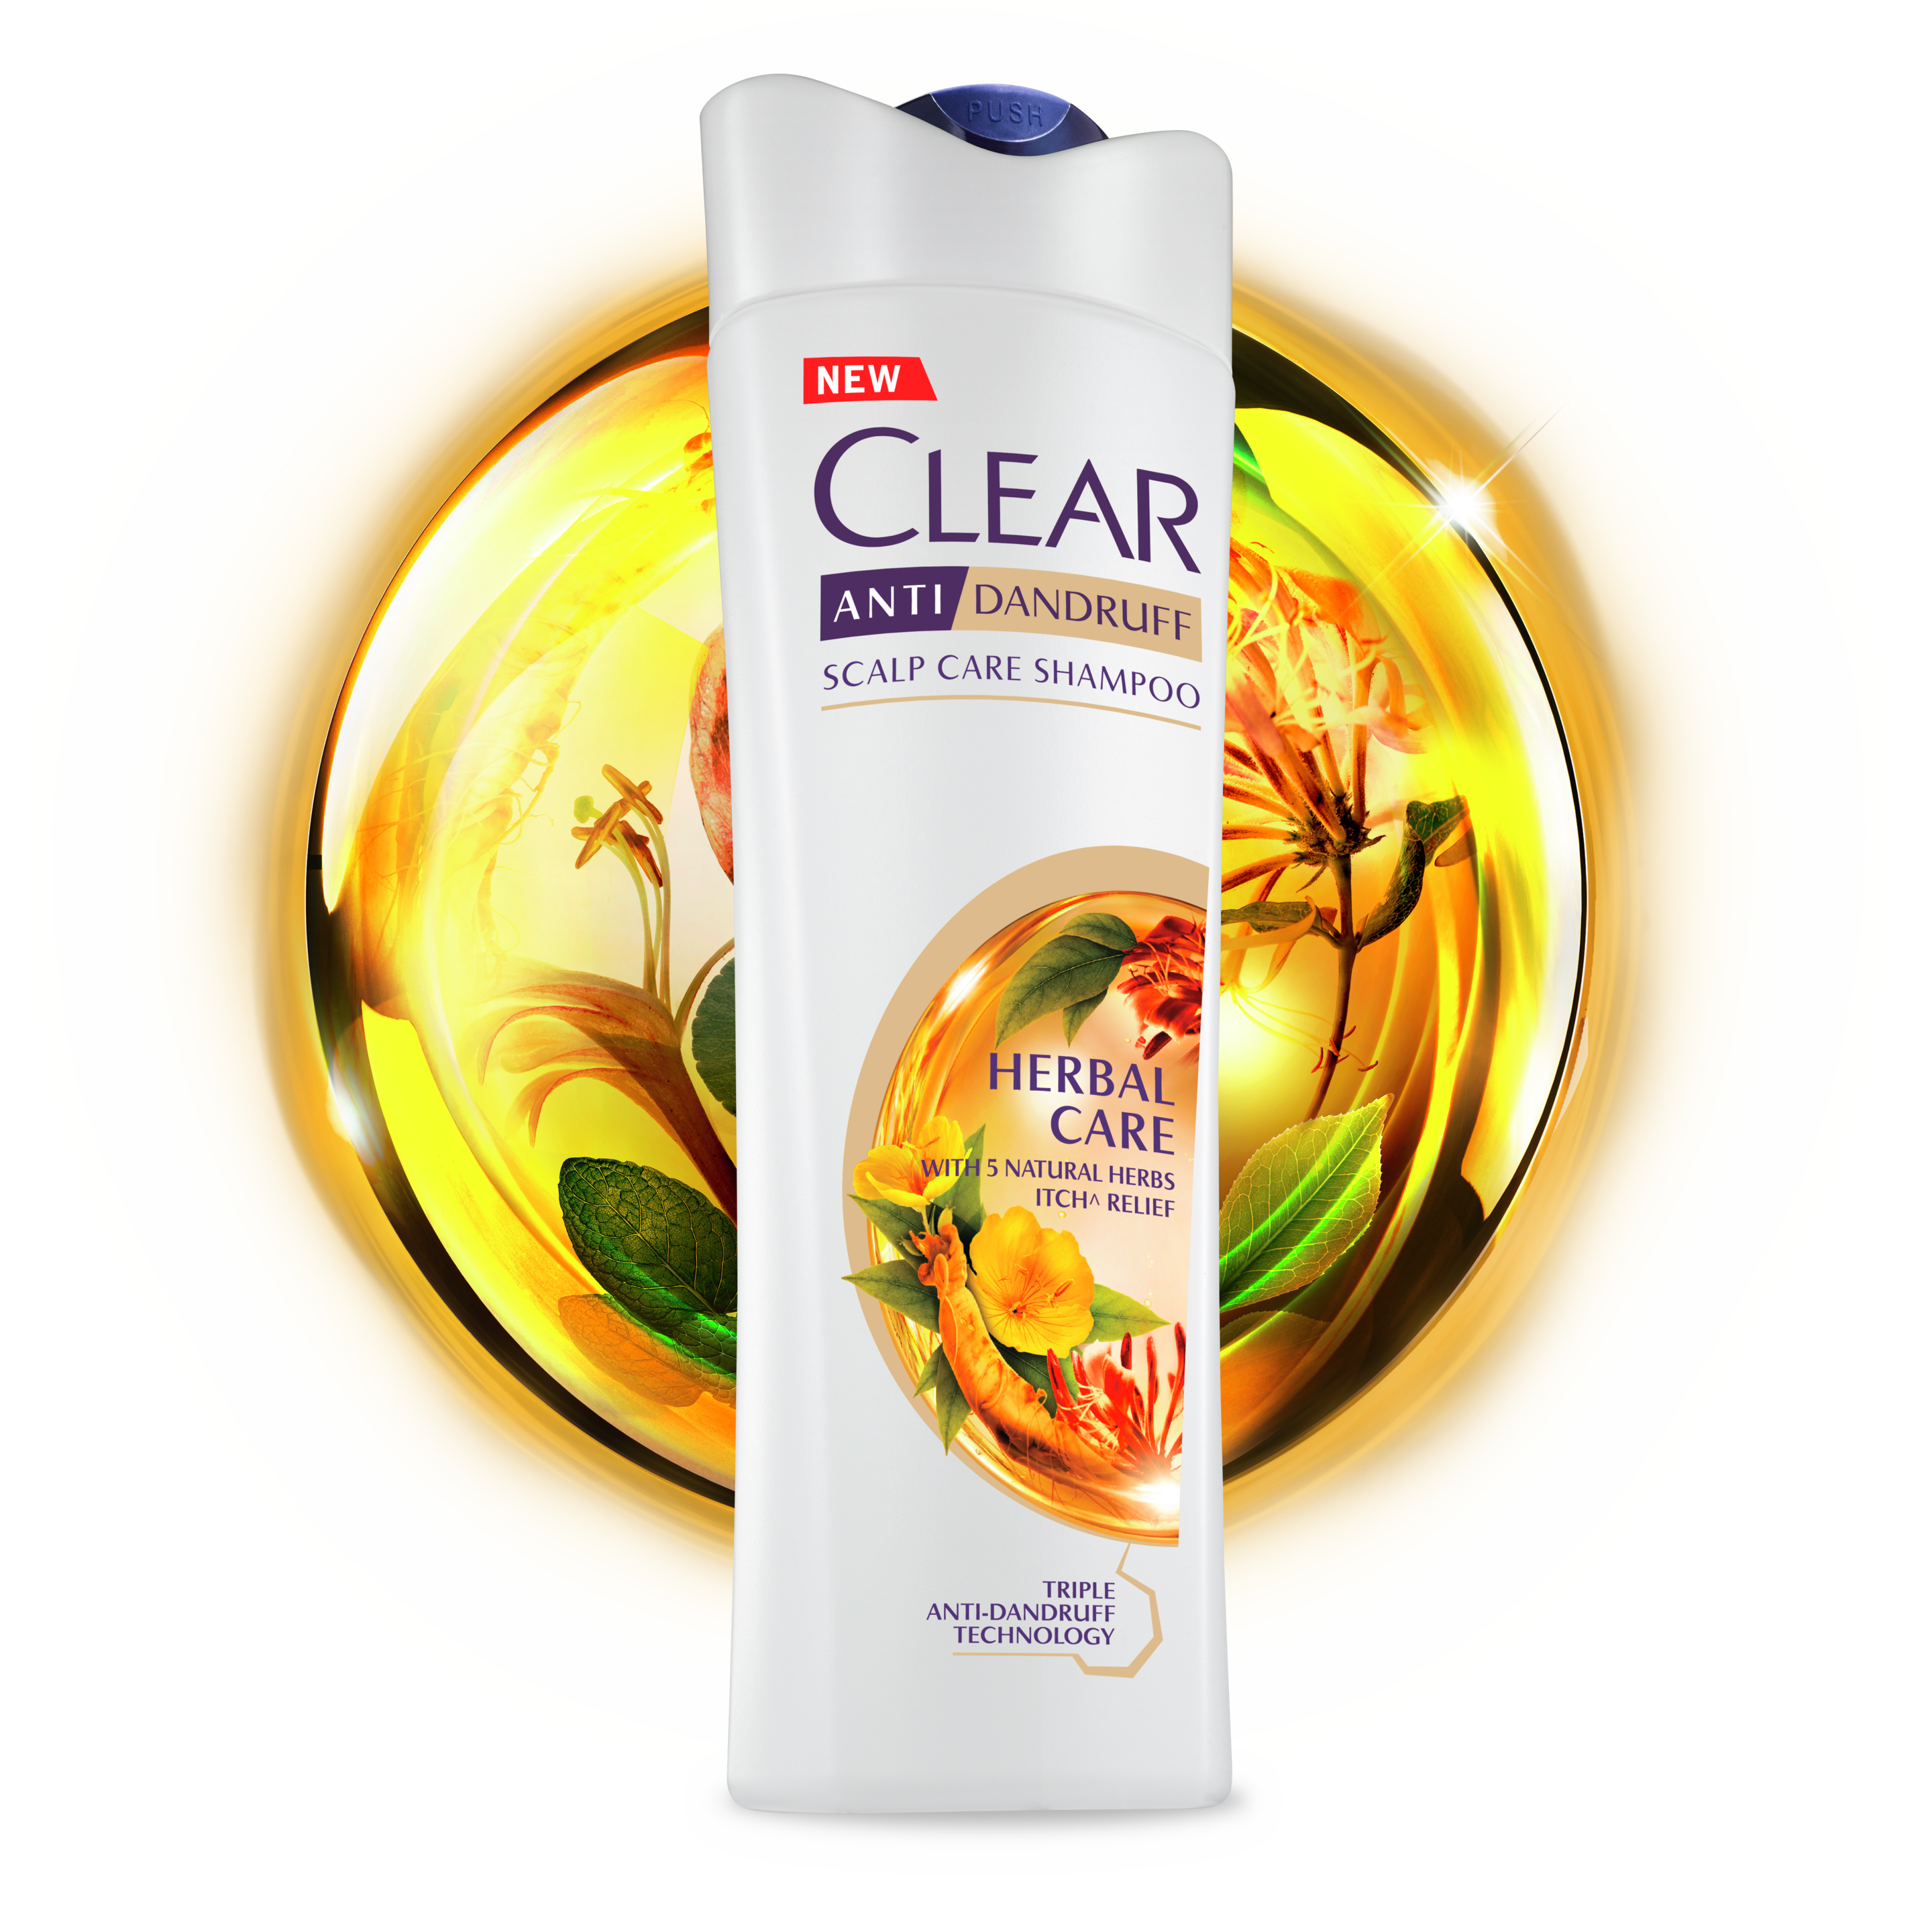 CLEAR Herbal Care Anti-dandruff Shampoo